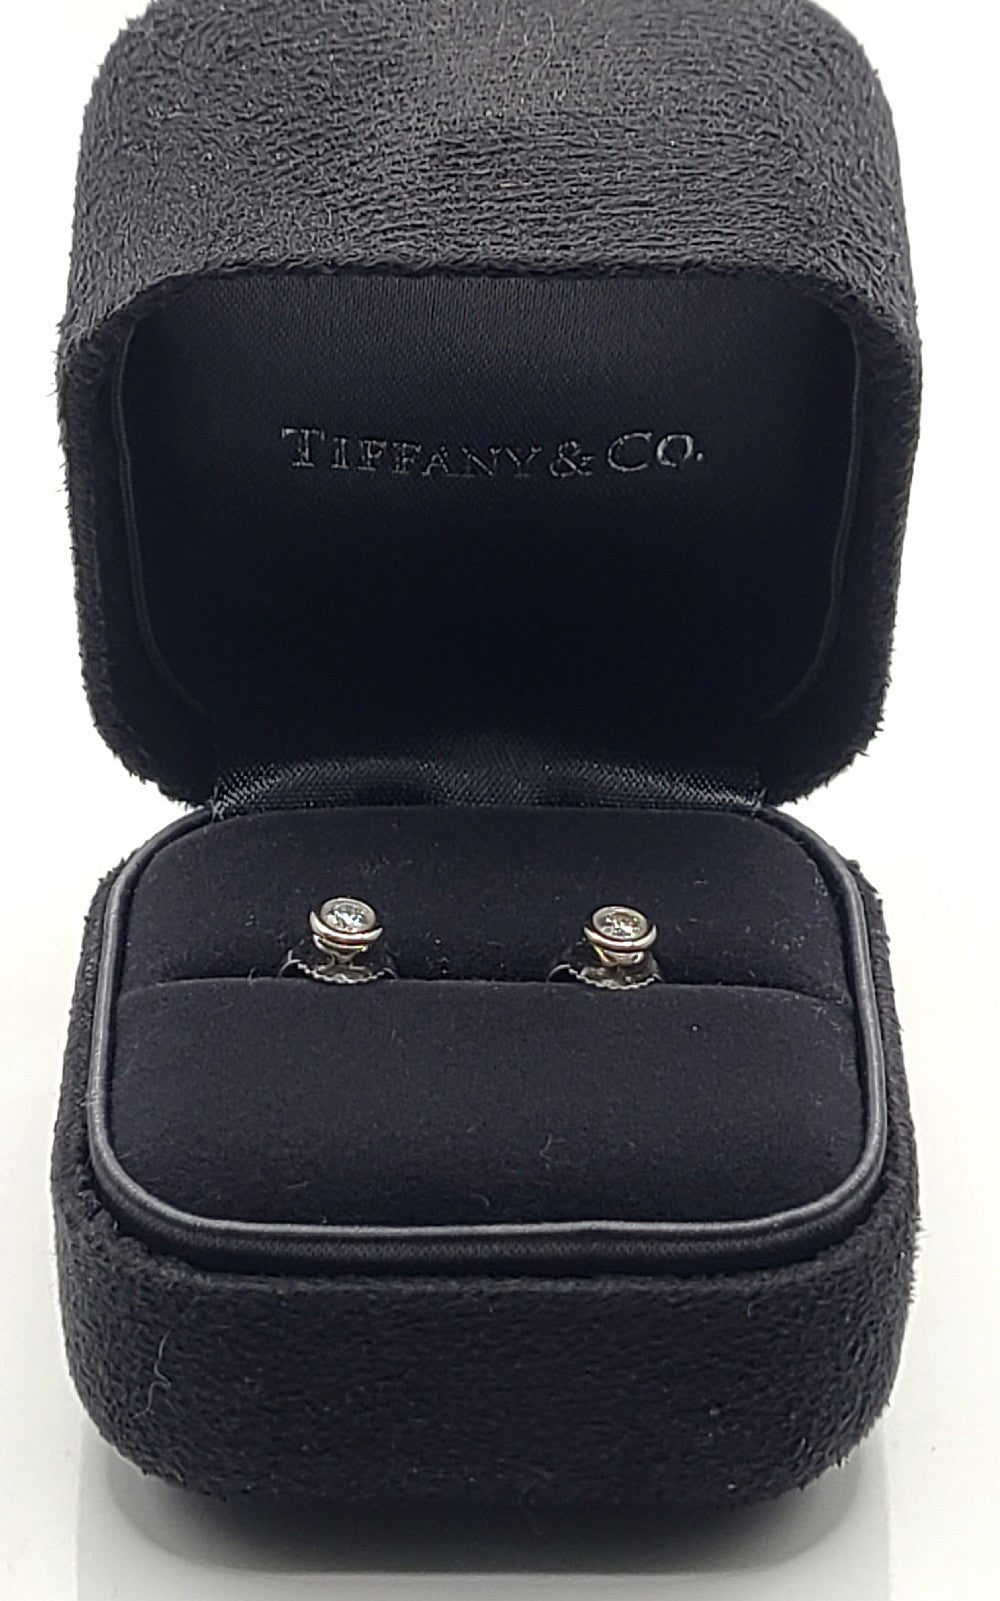 Tiffany & Co Diamond (0.16ct) & Platinum Stud Earrings